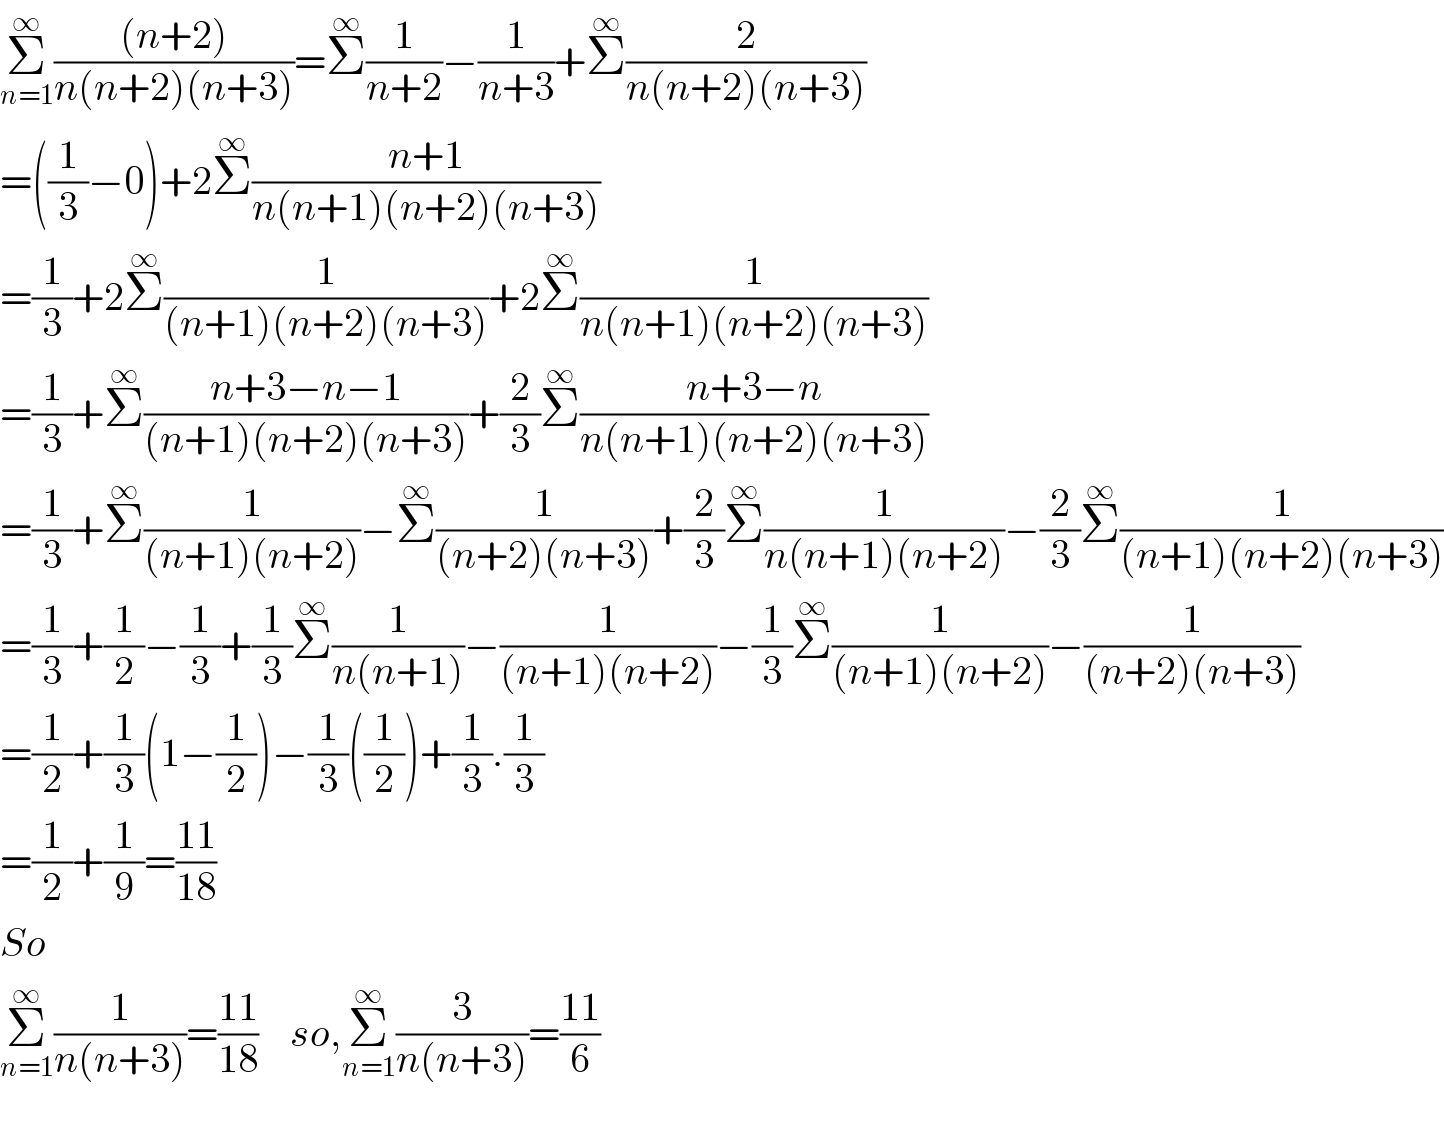 Σ_(n=1) ^∞ (((n+2))/(n(n+2)(n+3)))=Σ^∞ (1/(n+2))−(1/(n+3))+Σ^∞ (2/(n(n+2)(n+3)))  =((1/3)−0)+2Σ^∞ ((n+1)/(n(n+1)(n+2)(n+3)))  =(1/3)+2Σ^∞ (1/((n+1)(n+2)(n+3)))+2Σ^∞ (1/(n(n+1)(n+2)(n+3)))  =(1/3)+Σ^∞ ((n+3−n−1)/((n+1)(n+2)(n+3)))+(2/3)Σ^∞ ((n+3−n)/(n(n+1)(n+2)(n+3)))  =(1/3)+Σ^∞ (1/((n+1)(n+2)))−Σ^∞ (1/((n+2)(n+3)))+(2/3)Σ^∞ (1/(n(n+1)(n+2)))−(2/3)Σ^∞ (1/((n+1)(n+2)(n+3)))  =(1/3)+(1/2)−(1/3)+(1/3)Σ^∞ (1/(n(n+1)))−(1/((n+1)(n+2)))−(1/3)Σ^∞ (1/((n+1)(n+2)))−(1/((n+2)(n+3)))  =(1/2)+(1/3)(1−(1/2))−(1/3)((1/2))+(1/3).(1/3)  =(1/2)+(1/9)=((11)/(18))  So  Σ_(n=1) ^∞ (1/(n(n+3)))=((11)/(18))    so,Σ_(n=1) ^∞ (3/(n(n+3)))=((11)/6)    